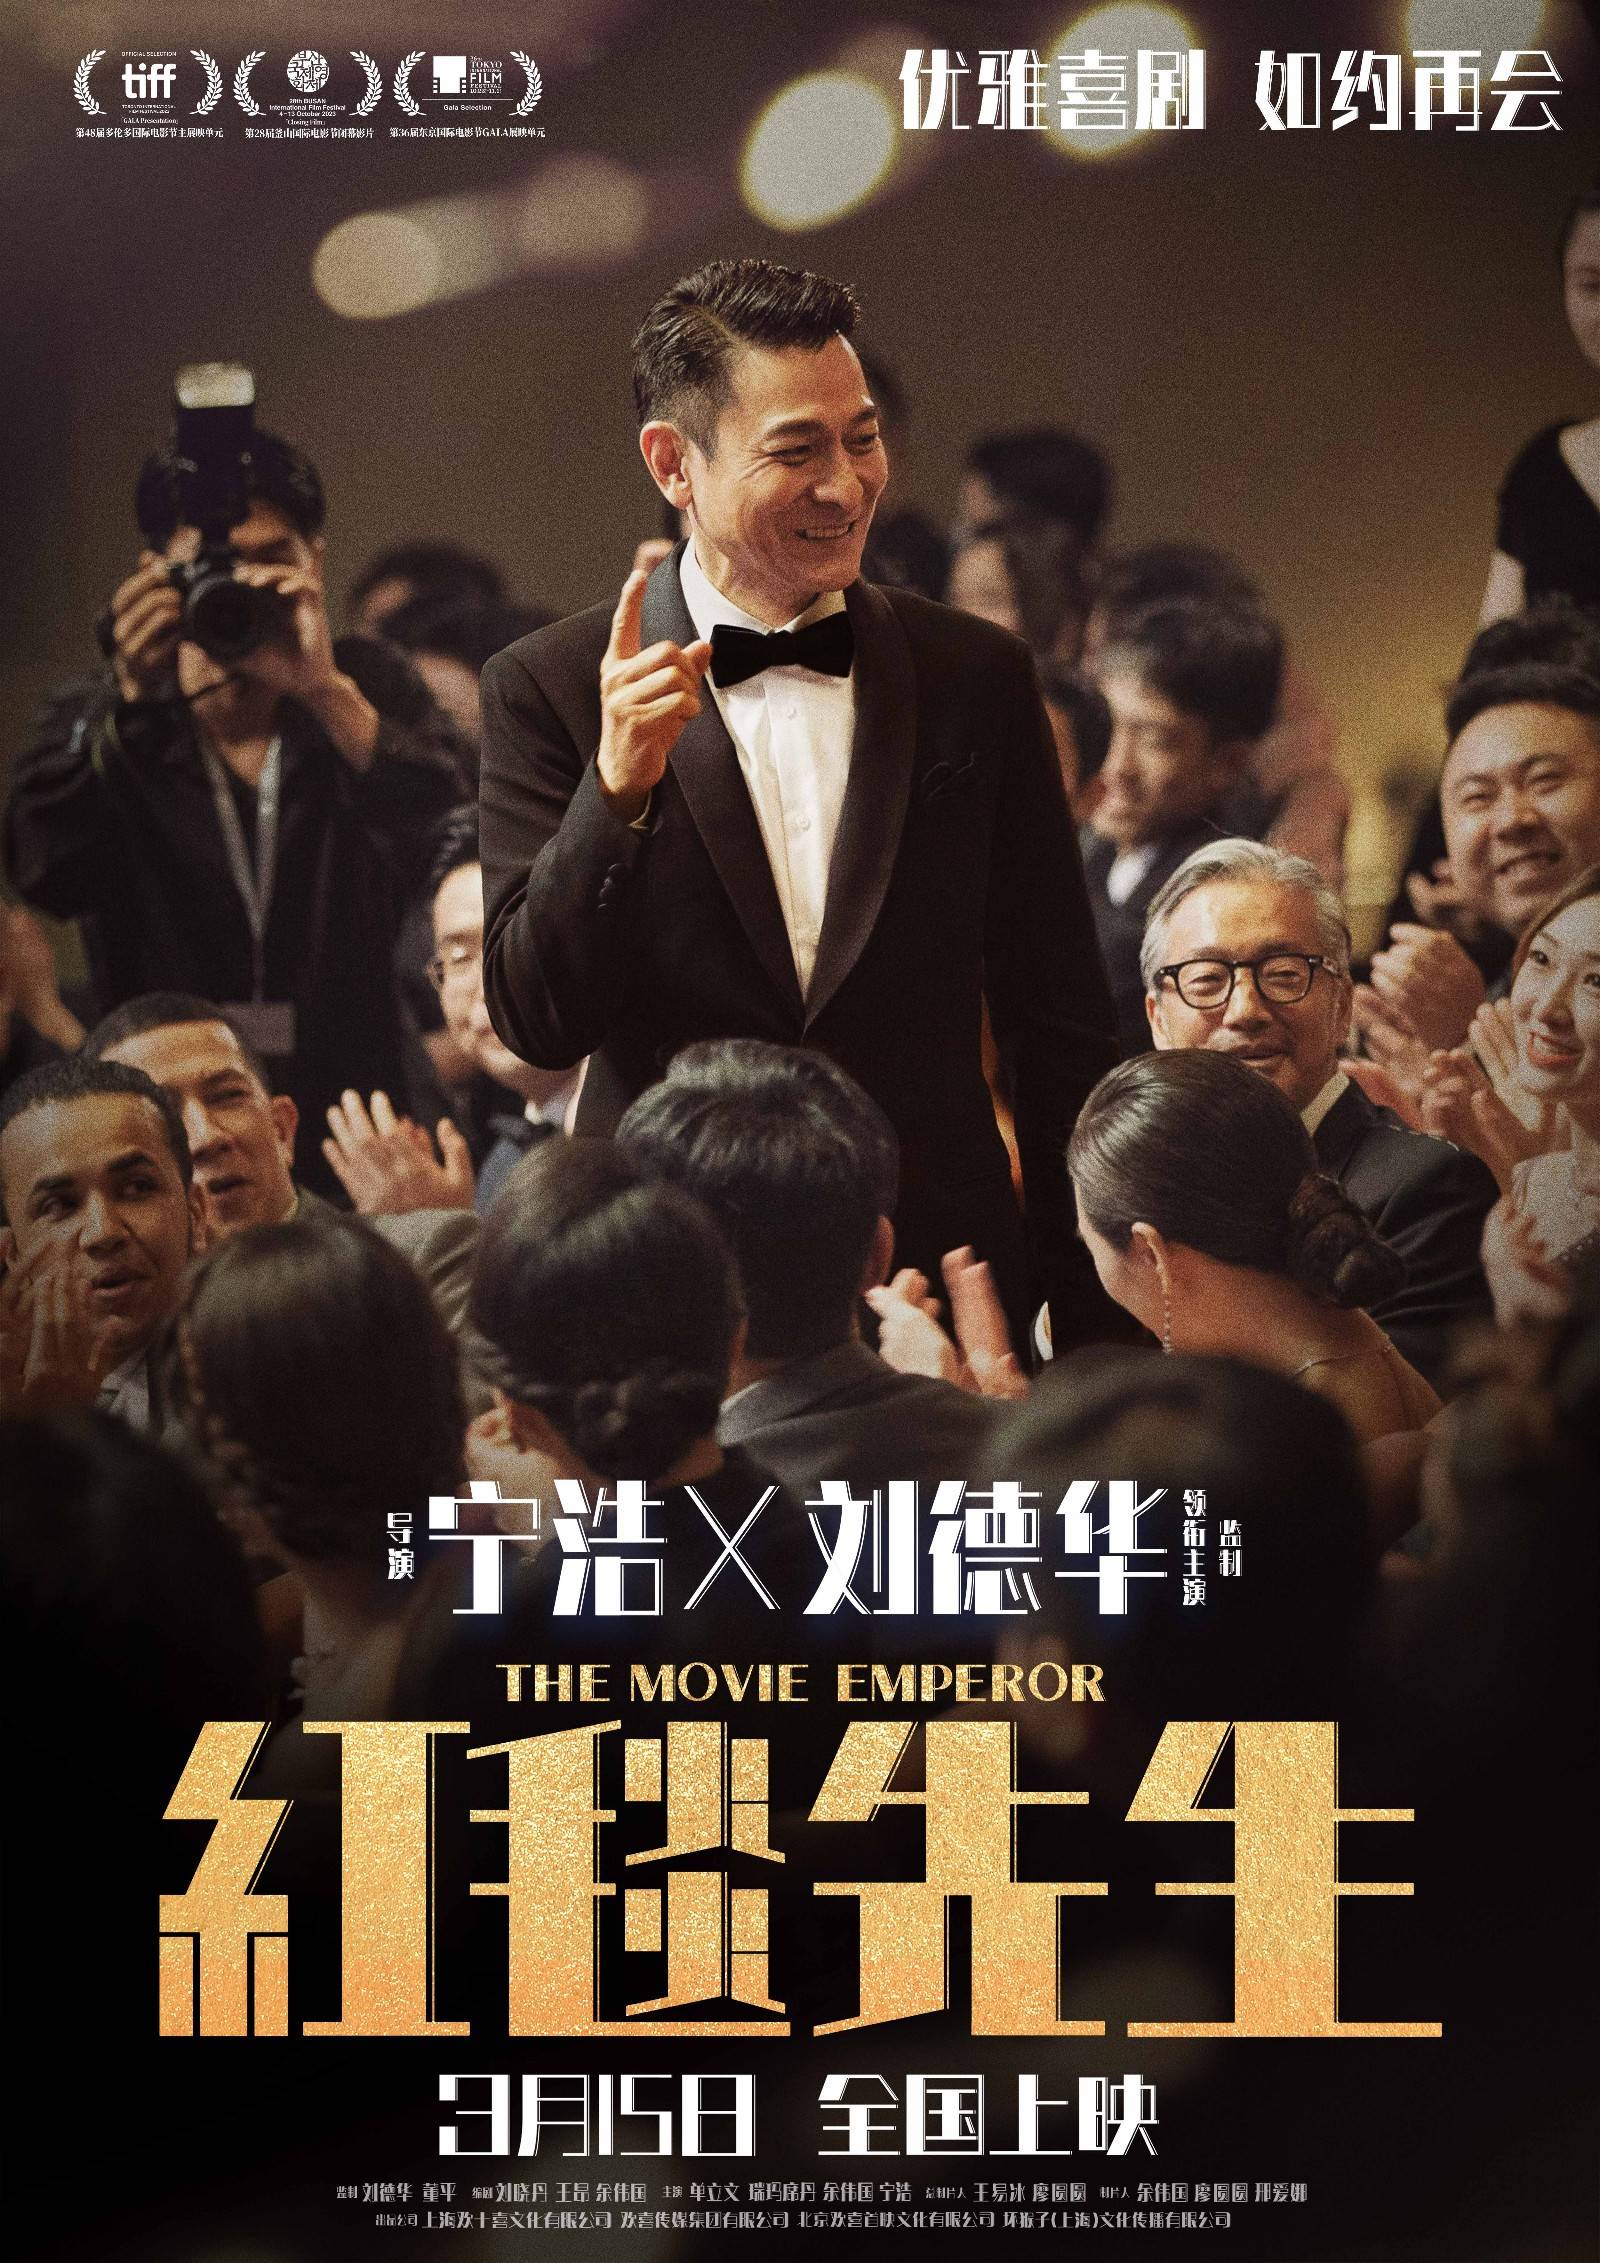 由宁浩执导,刘德华领衔主演的电影《红毯先生》今日发布如约再会版